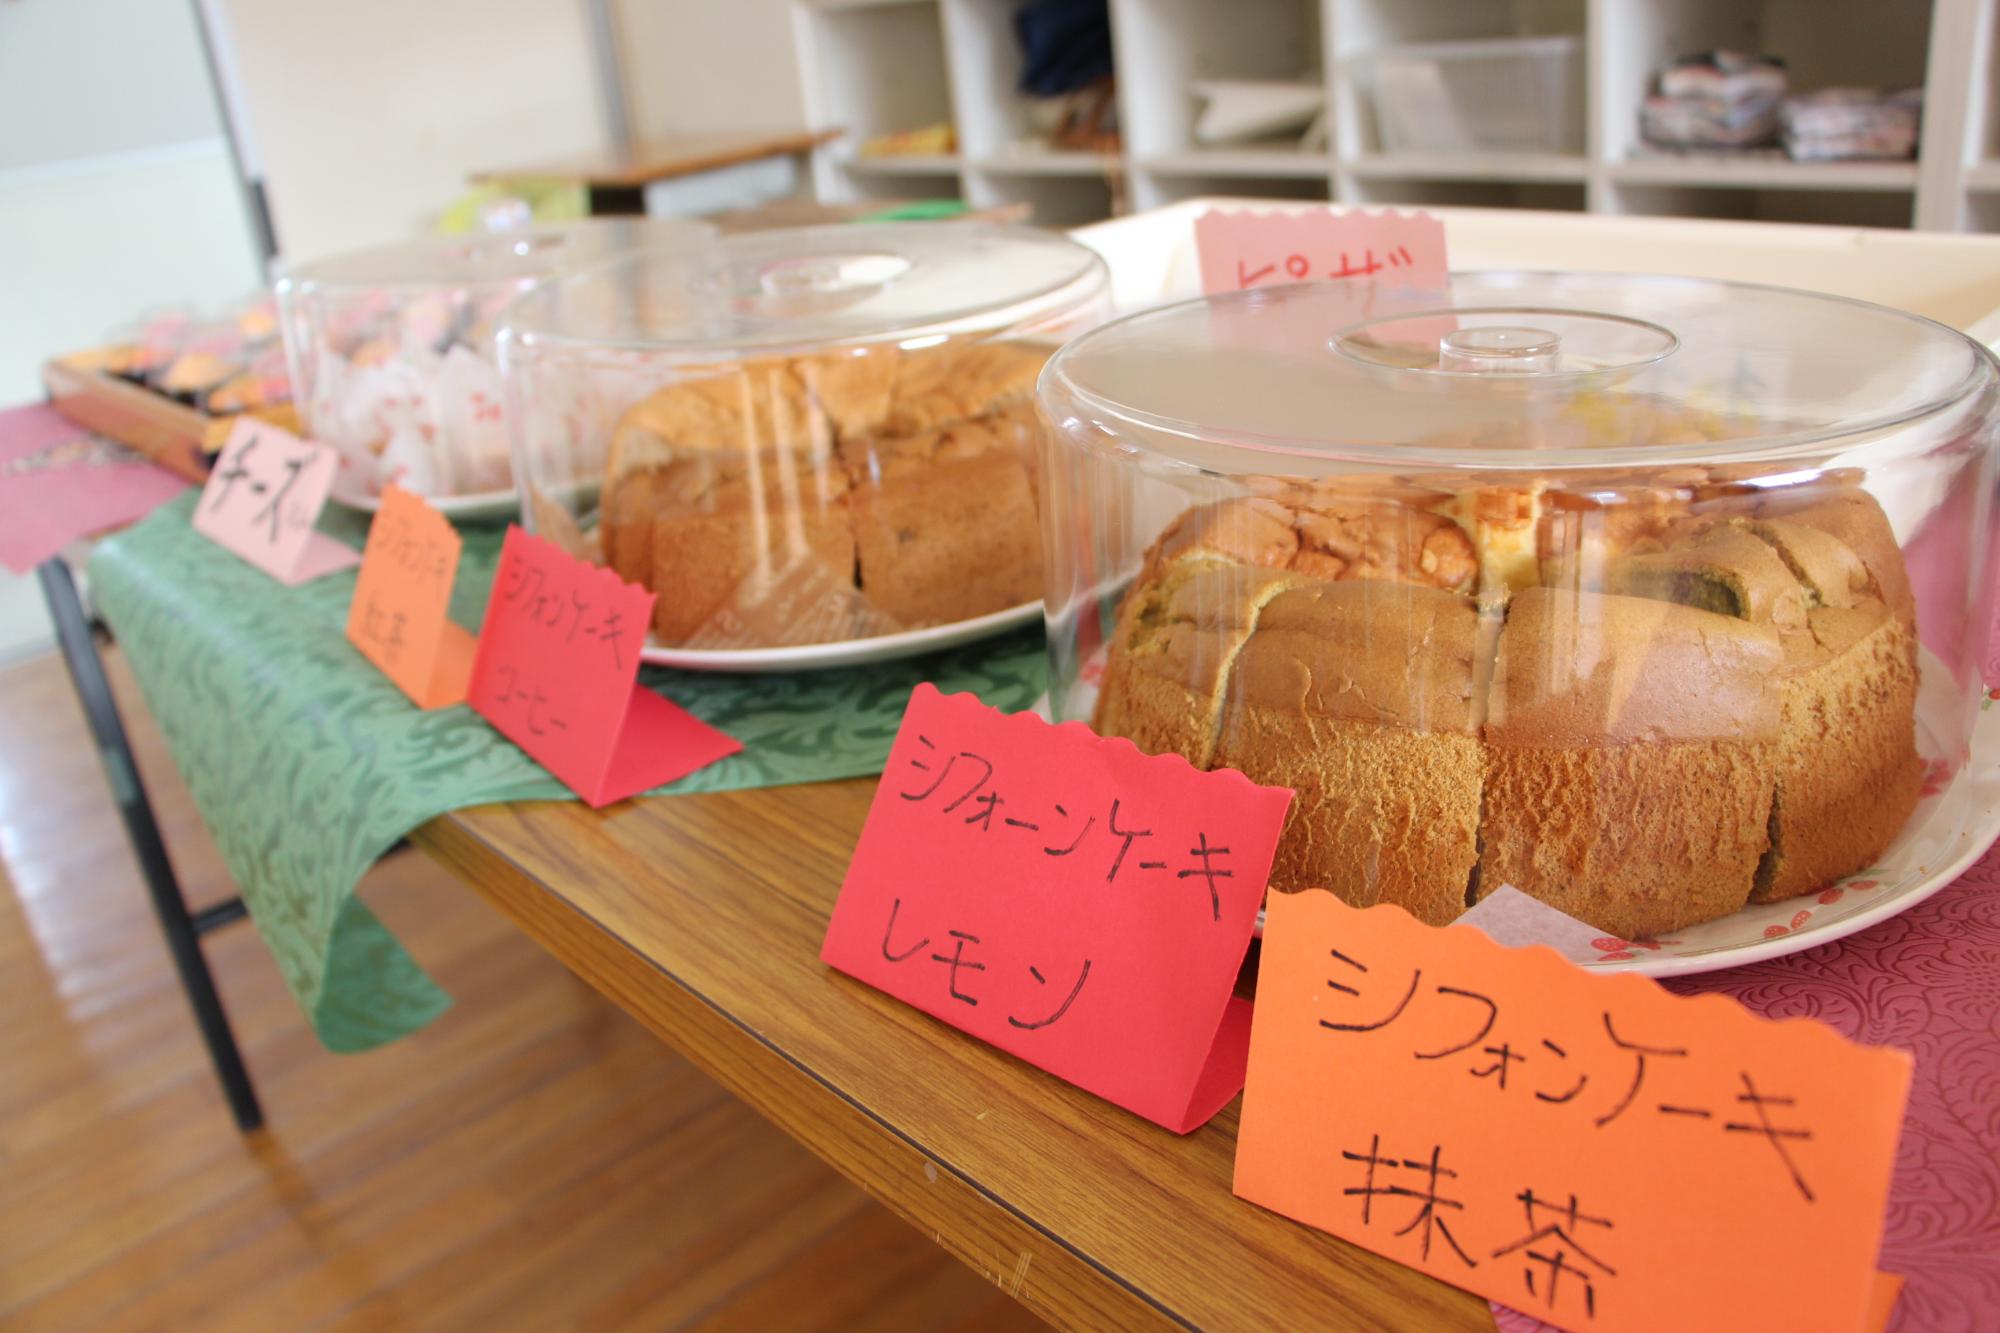 繁盛秋穫祭で出品された繁盛米ブレンドシフォンケーキ